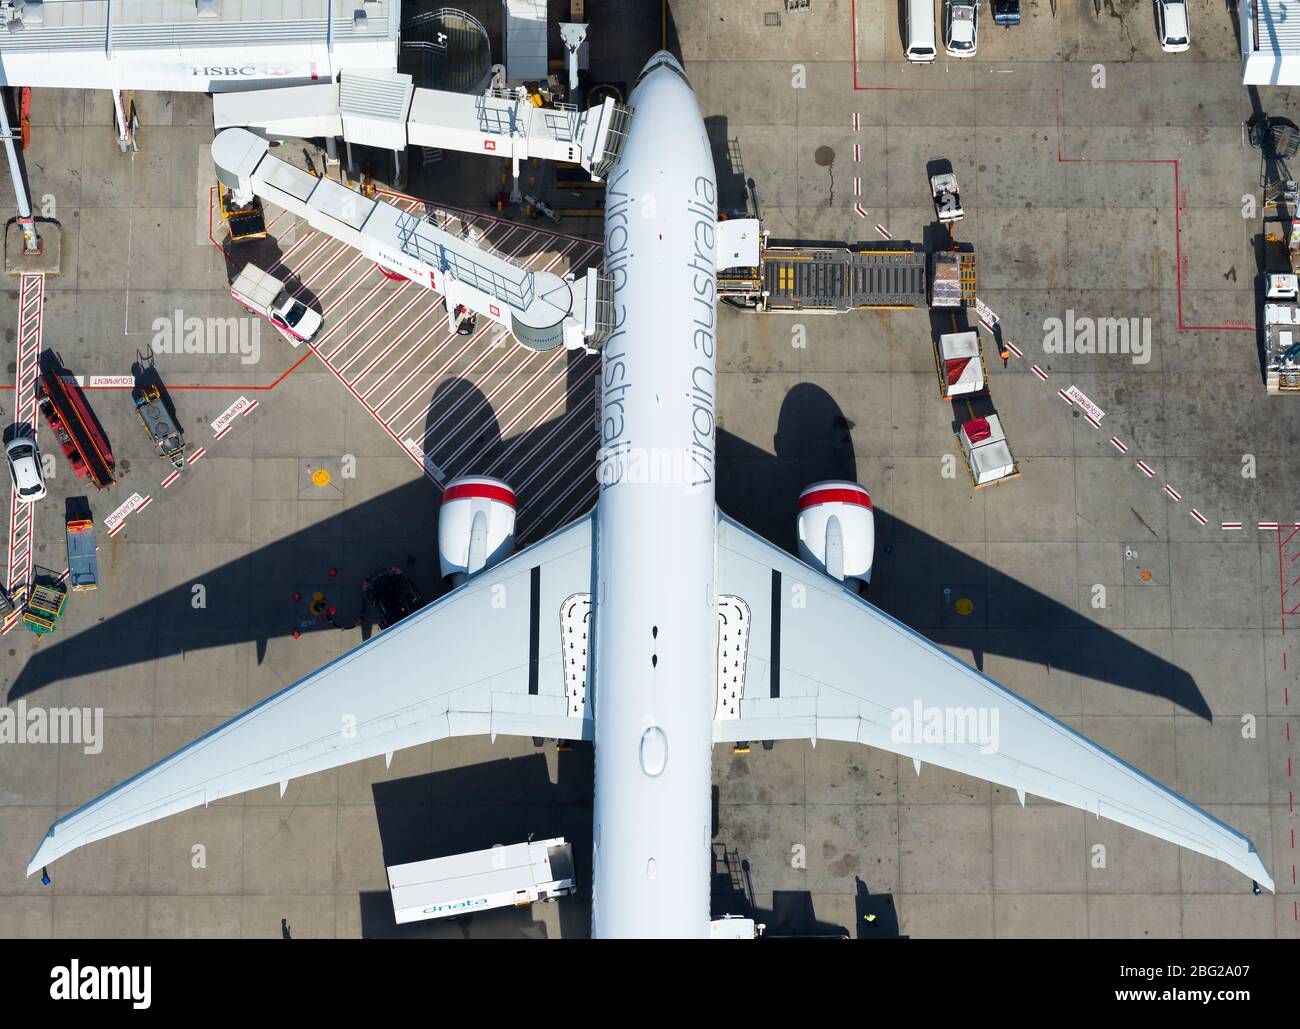 Virgin Australia Boeing 777-Luftaufnahme am Sydney International Airport. Australische Fluggesellschaft tritt in freiwillige Verwaltung ein. Flugzeug VH-VOZ. Stockfoto